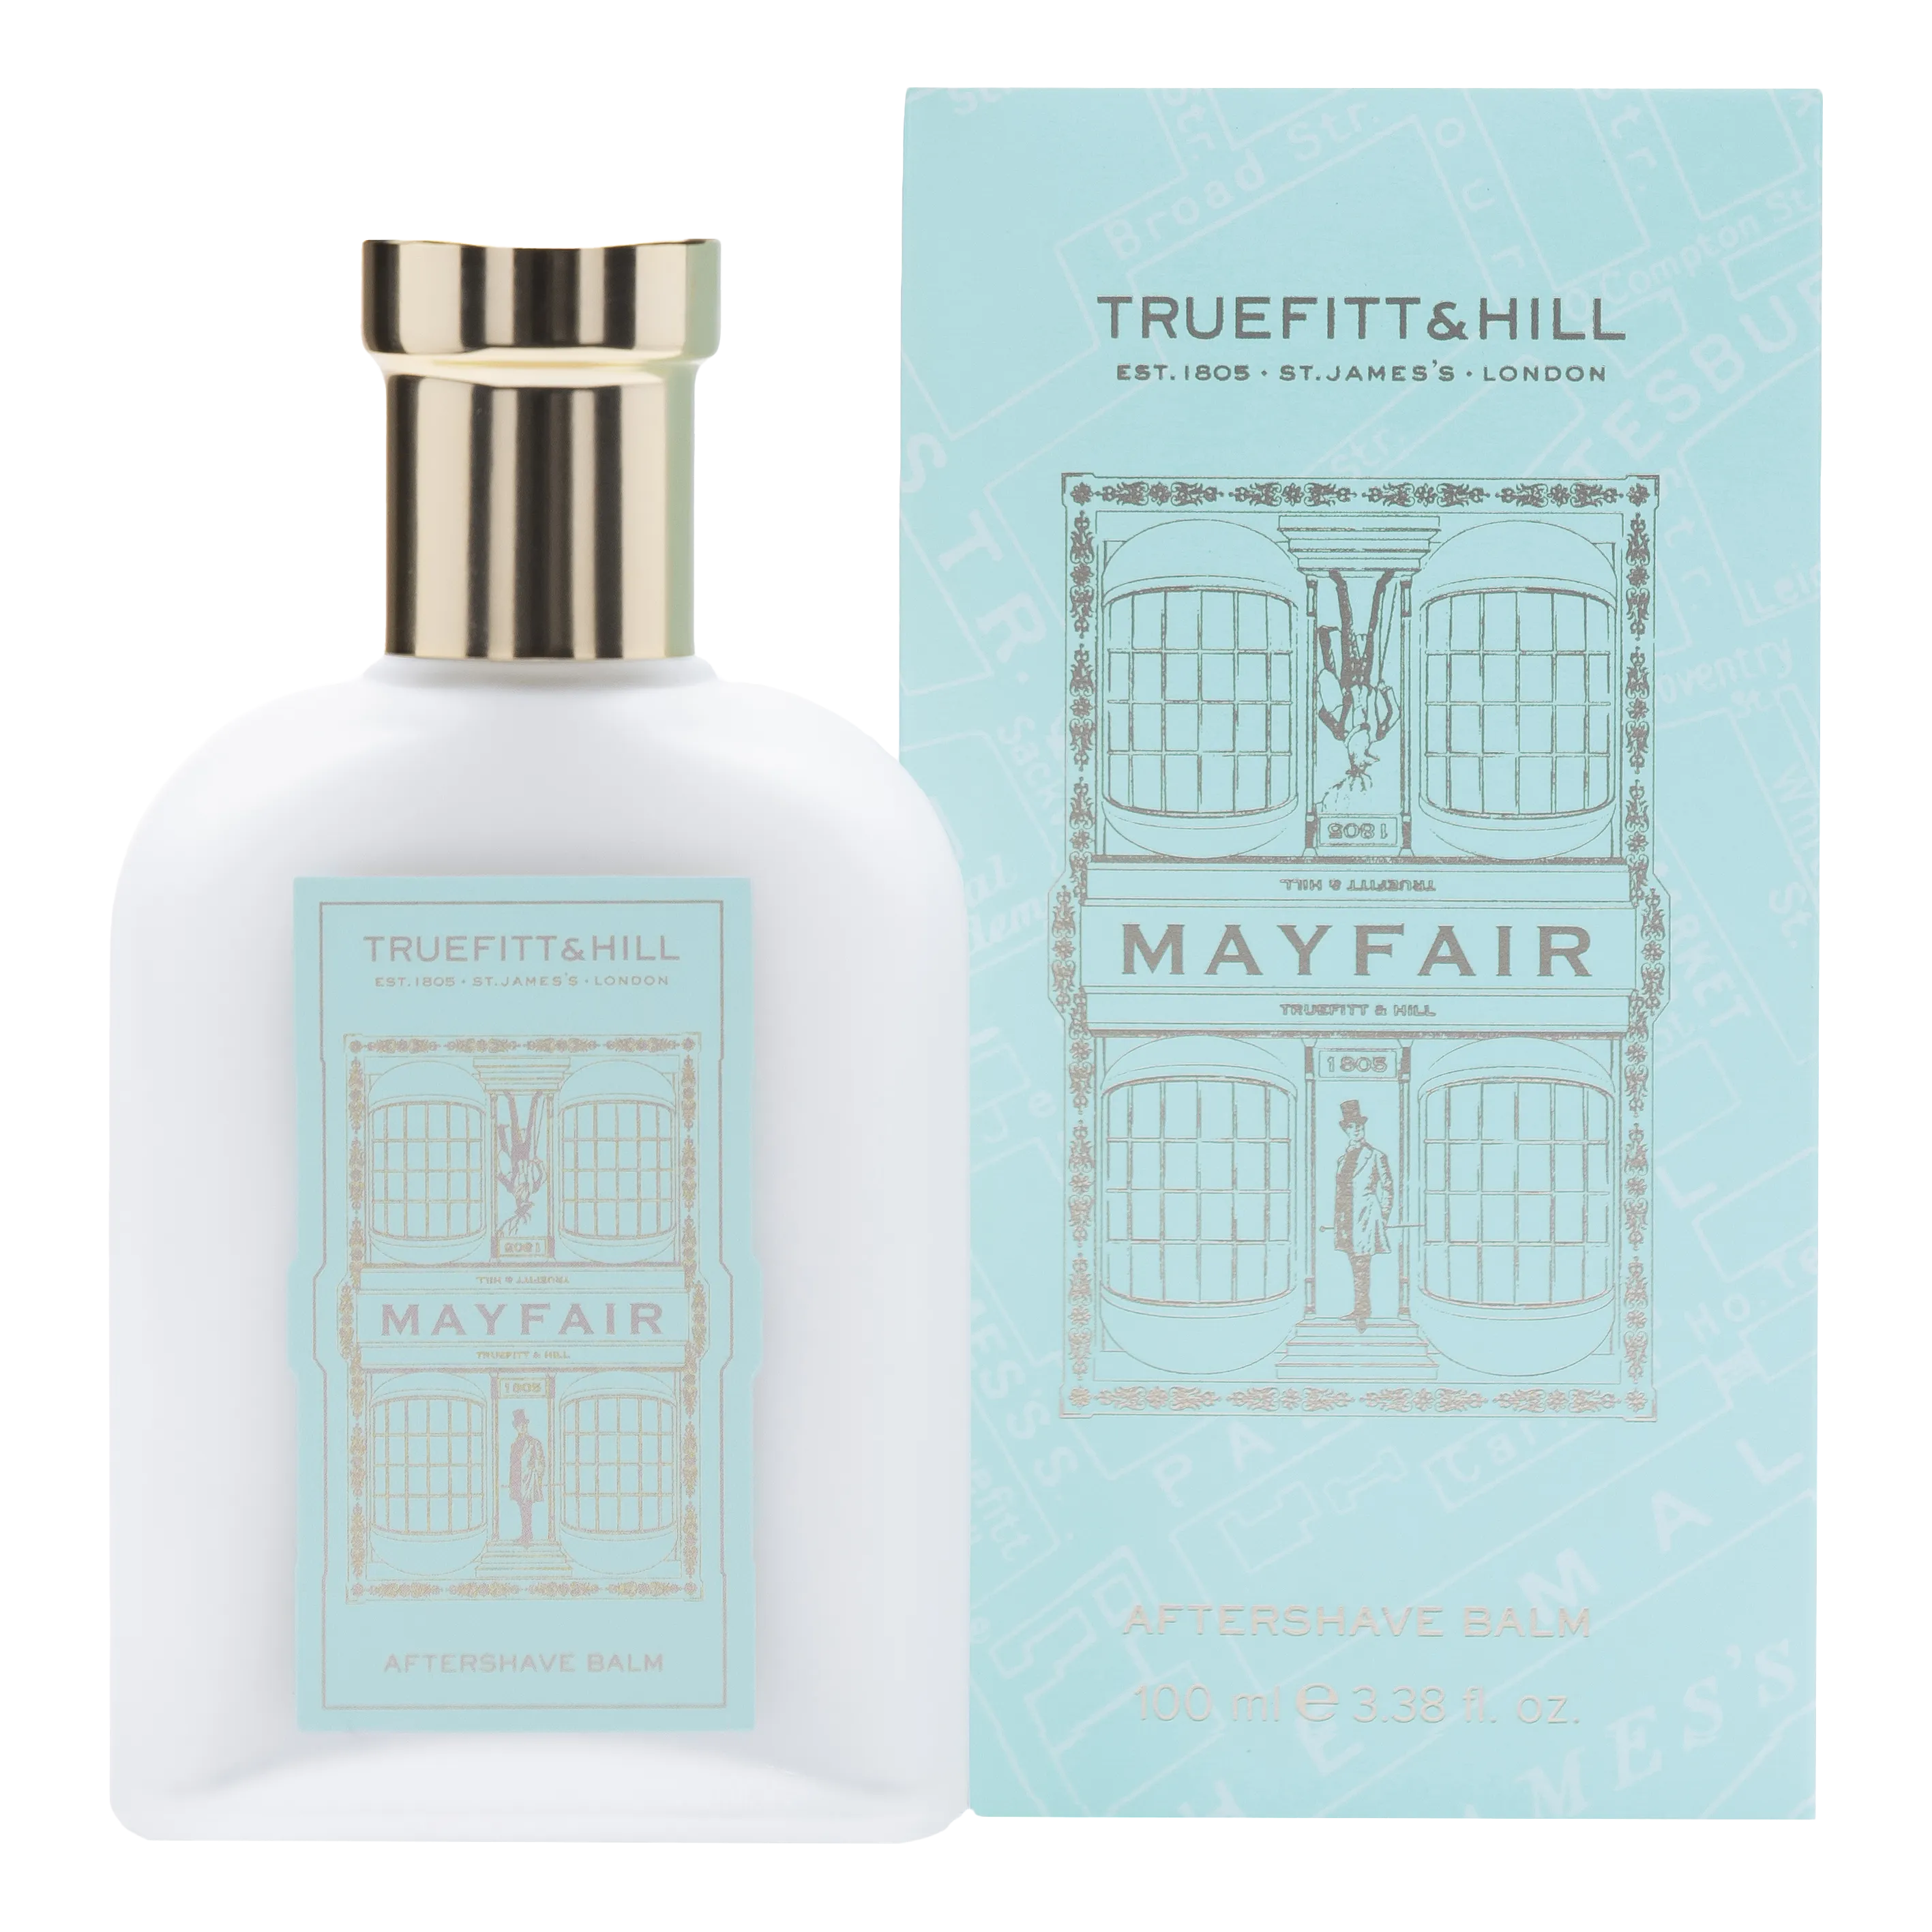 Truefitt & Hill Aftershave Balm - Mayfair 